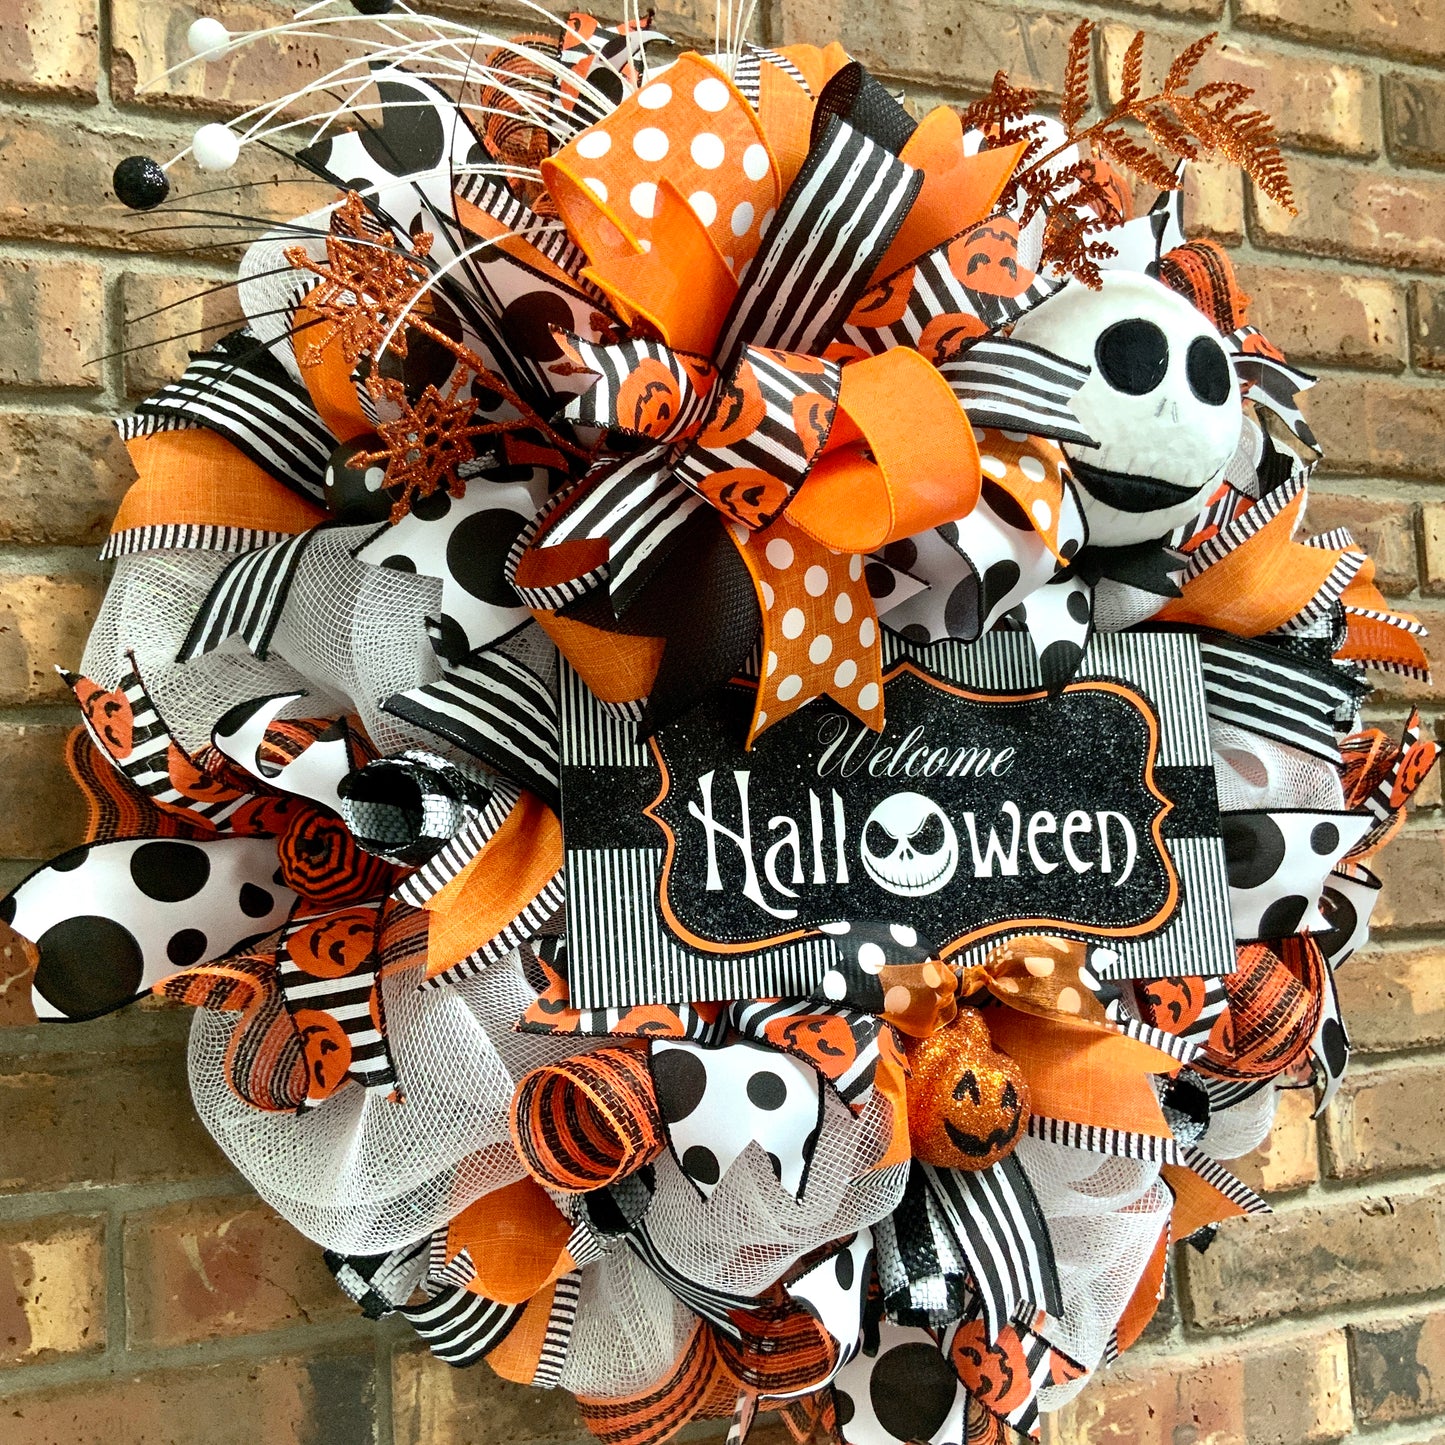 Halloween Welcome Wreath, Jack Skellington Wreath, Happy Halloween Decor, Halloween Jack Skellington Door Hanger